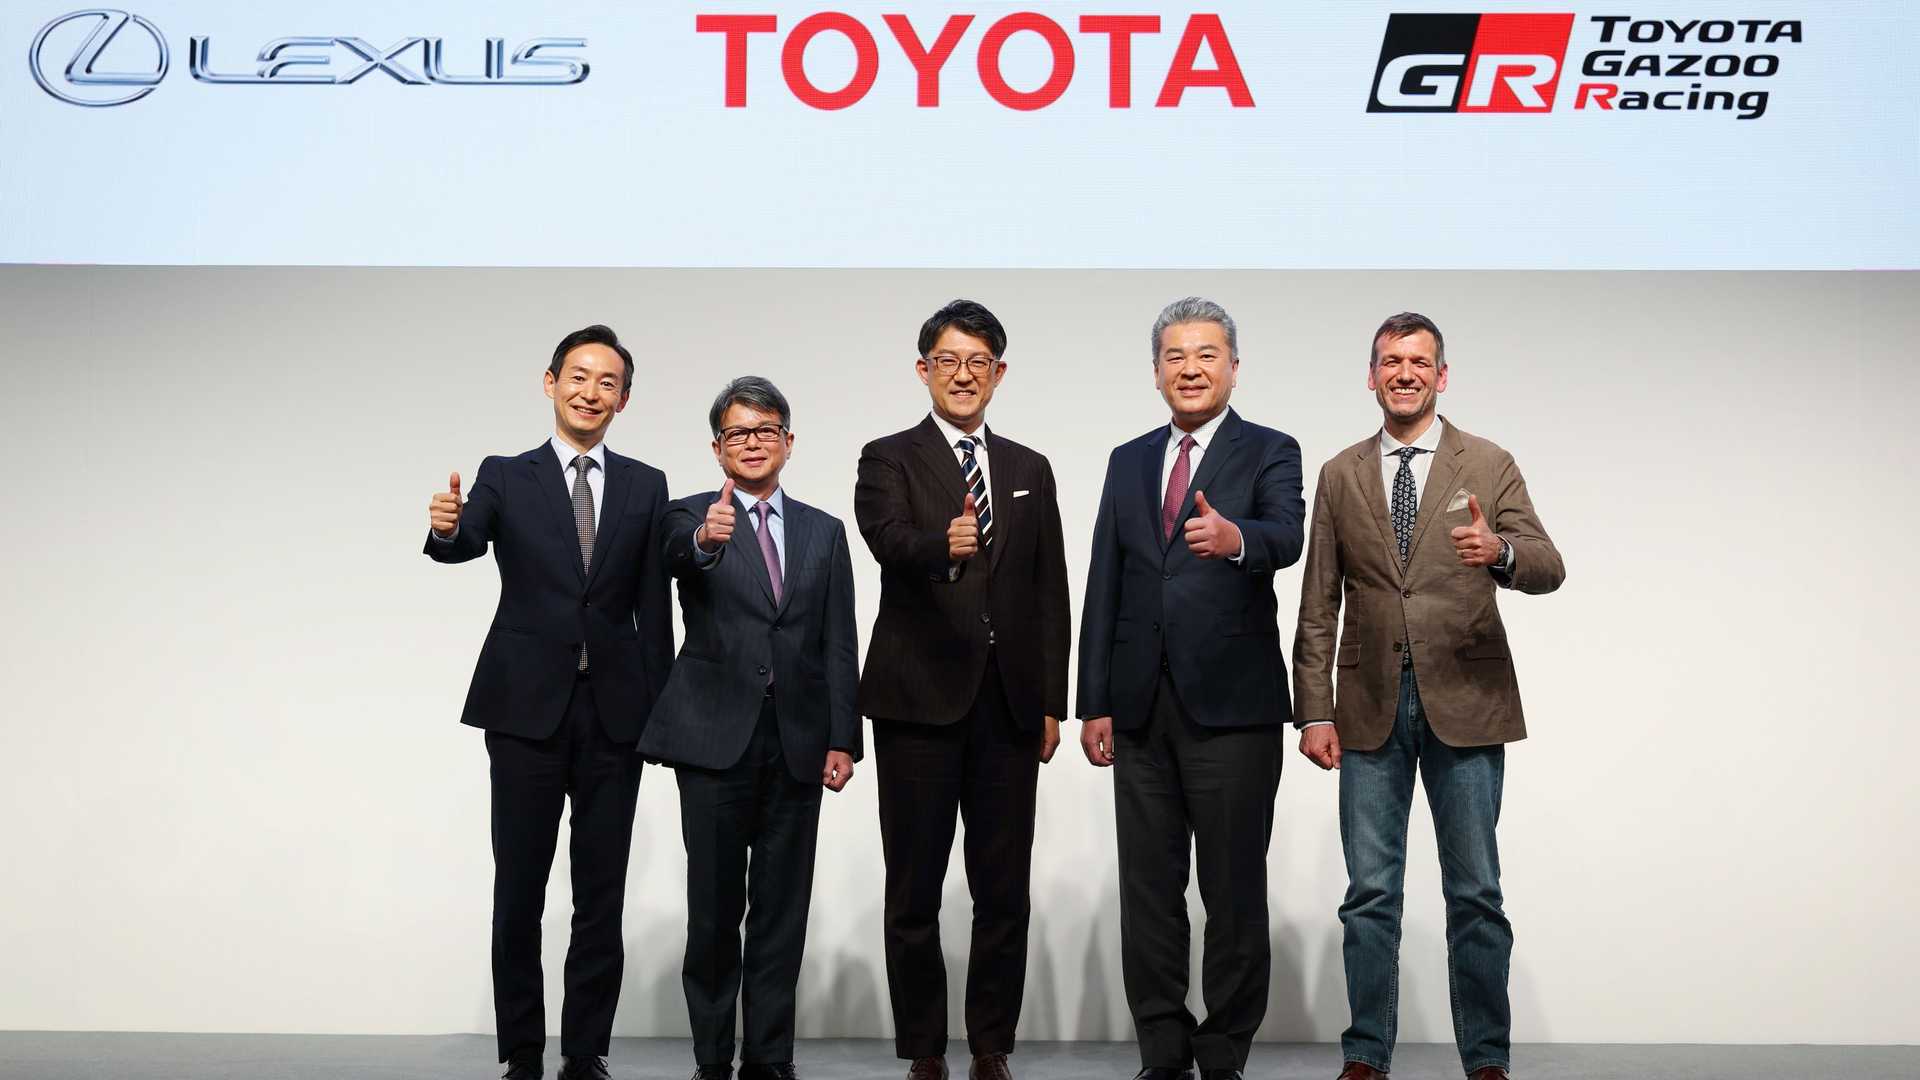 Toyota ต้อนรับผู้บริหารคนใหม่ พร้อมกำหนดทิศทางรถยนต์ไฟฟ้าภายในปี 2026